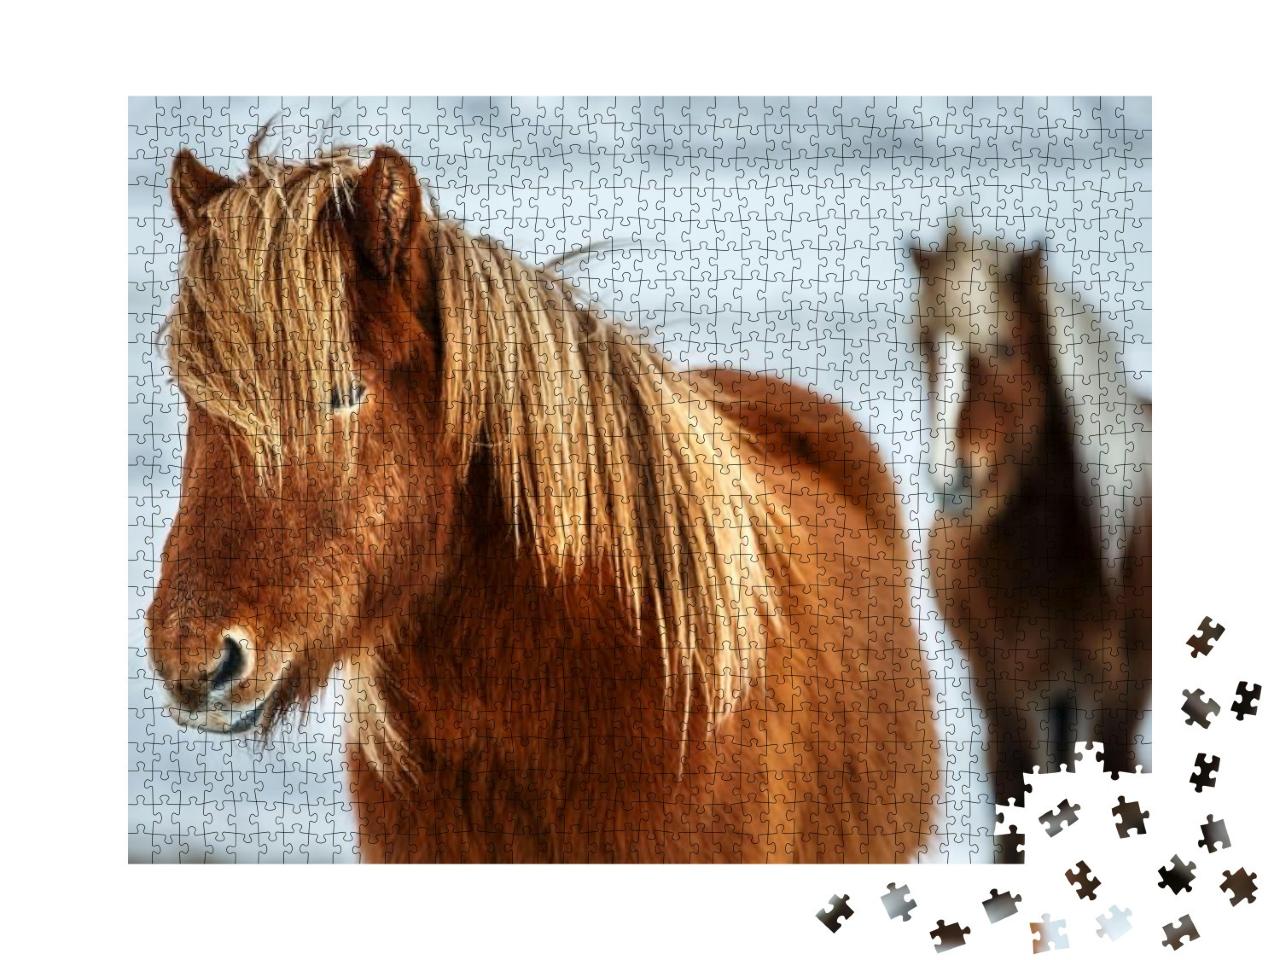 Puzzle 1000 Teile „Porträt eines schönen Islandpferdes, im Hintergrund ein weiteres Pferd“